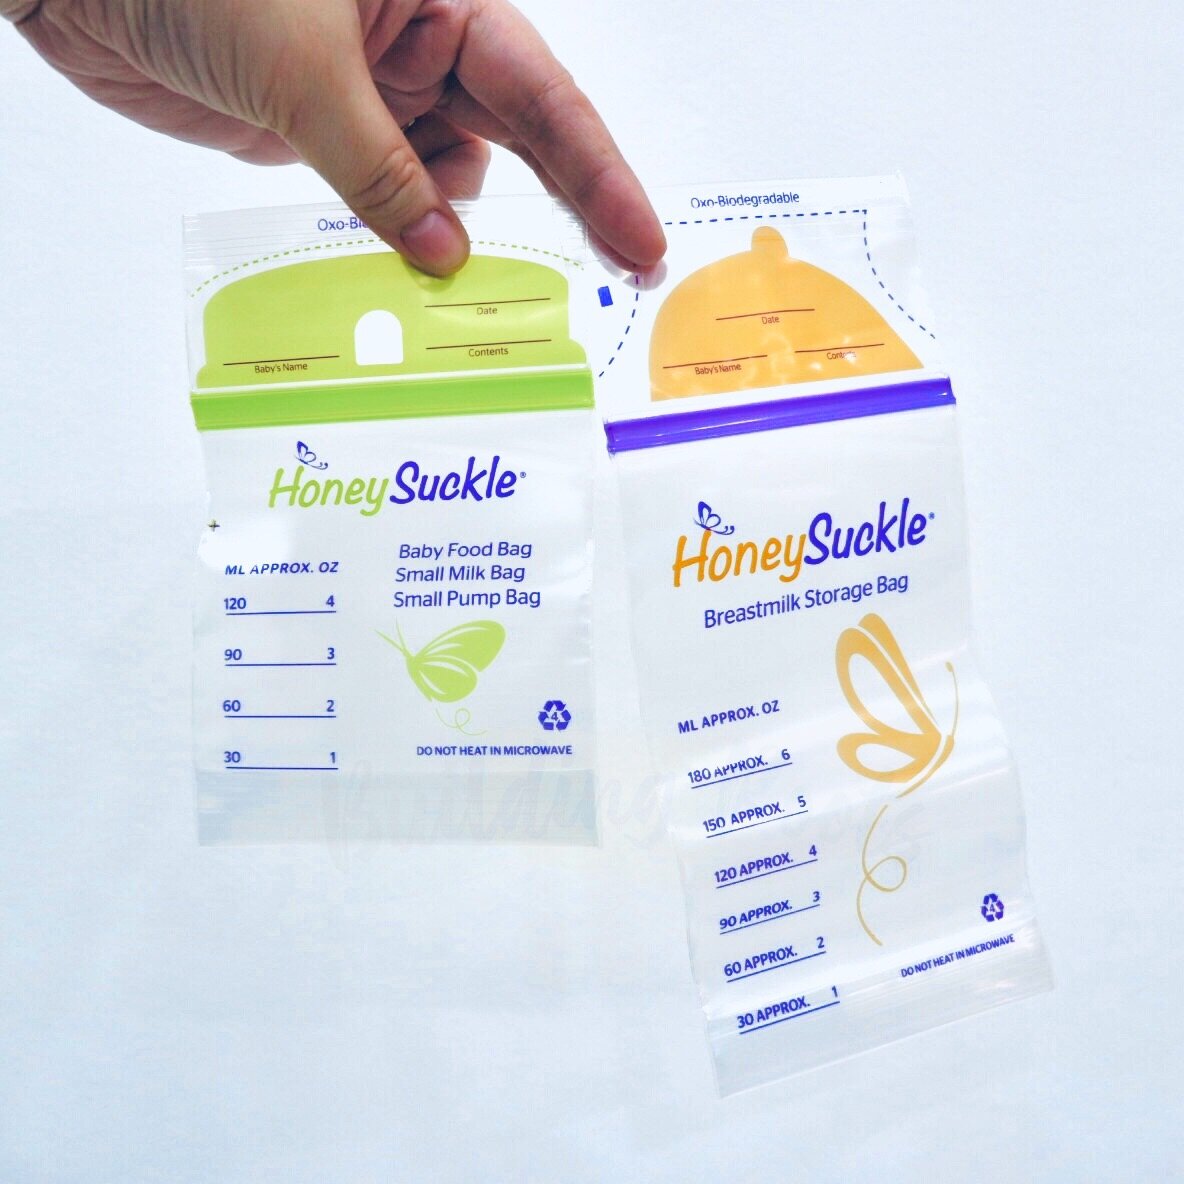 Honeysuckle Breastmilk Storage Bag (6 oz)